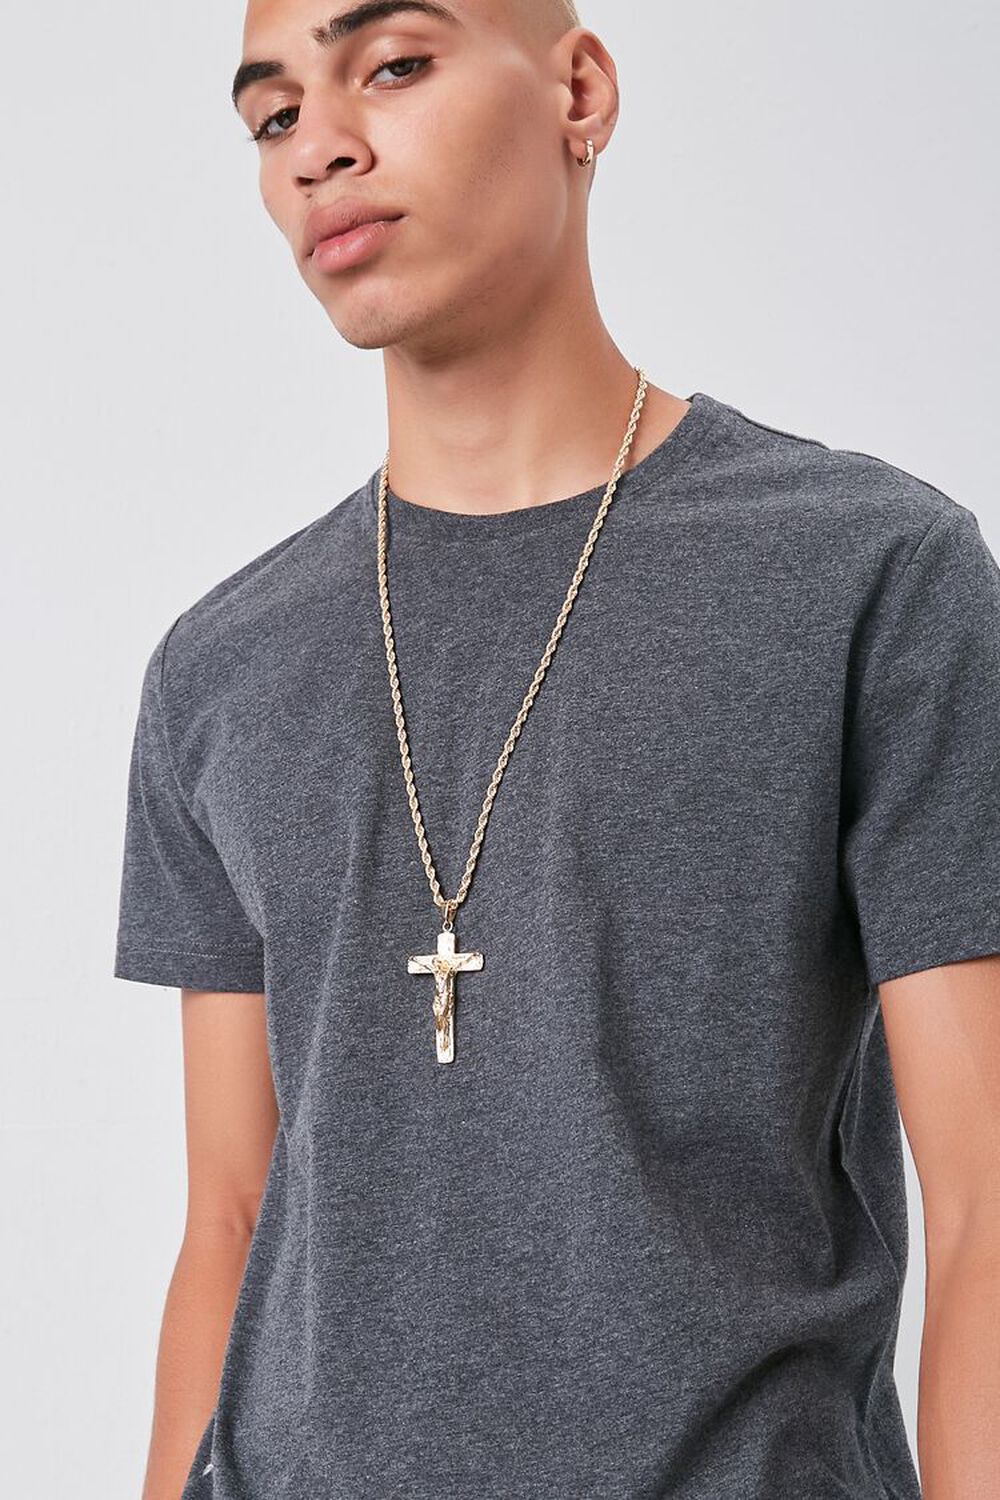 Men Cross Pendant Chain Necklace, image 1